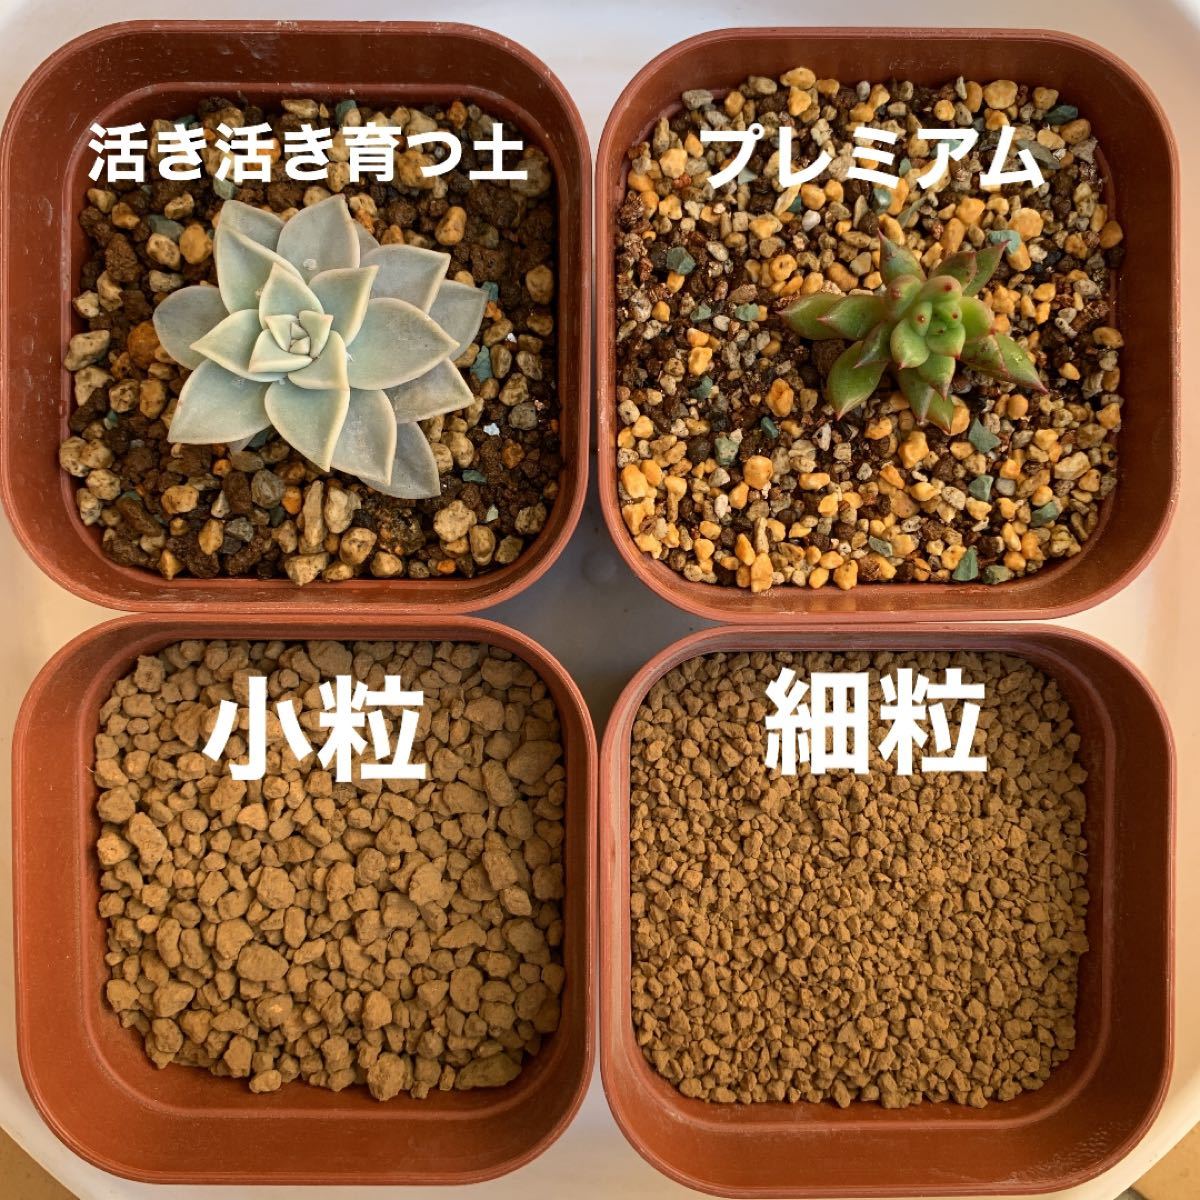 Paypayフリマ 多肉植物の土 サボテンの土 多肉植物用土 硬質赤玉土 小粒